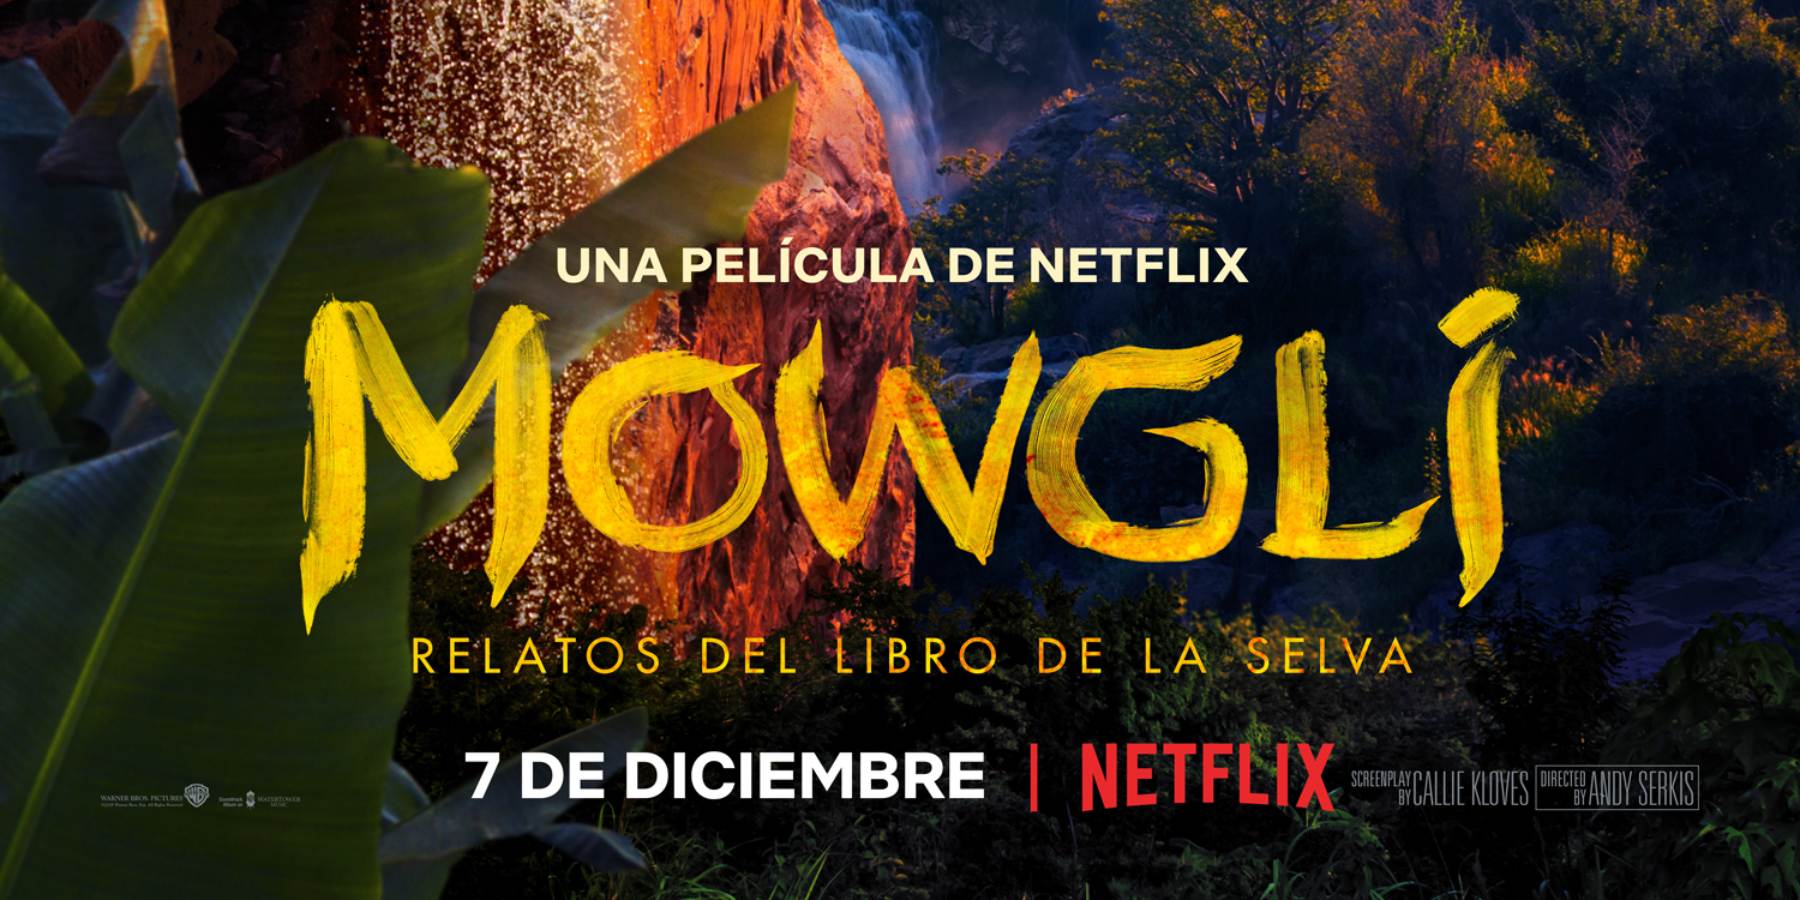 Netflix lanza nuevos avances de 'Narcos: México', Mowgli y más!